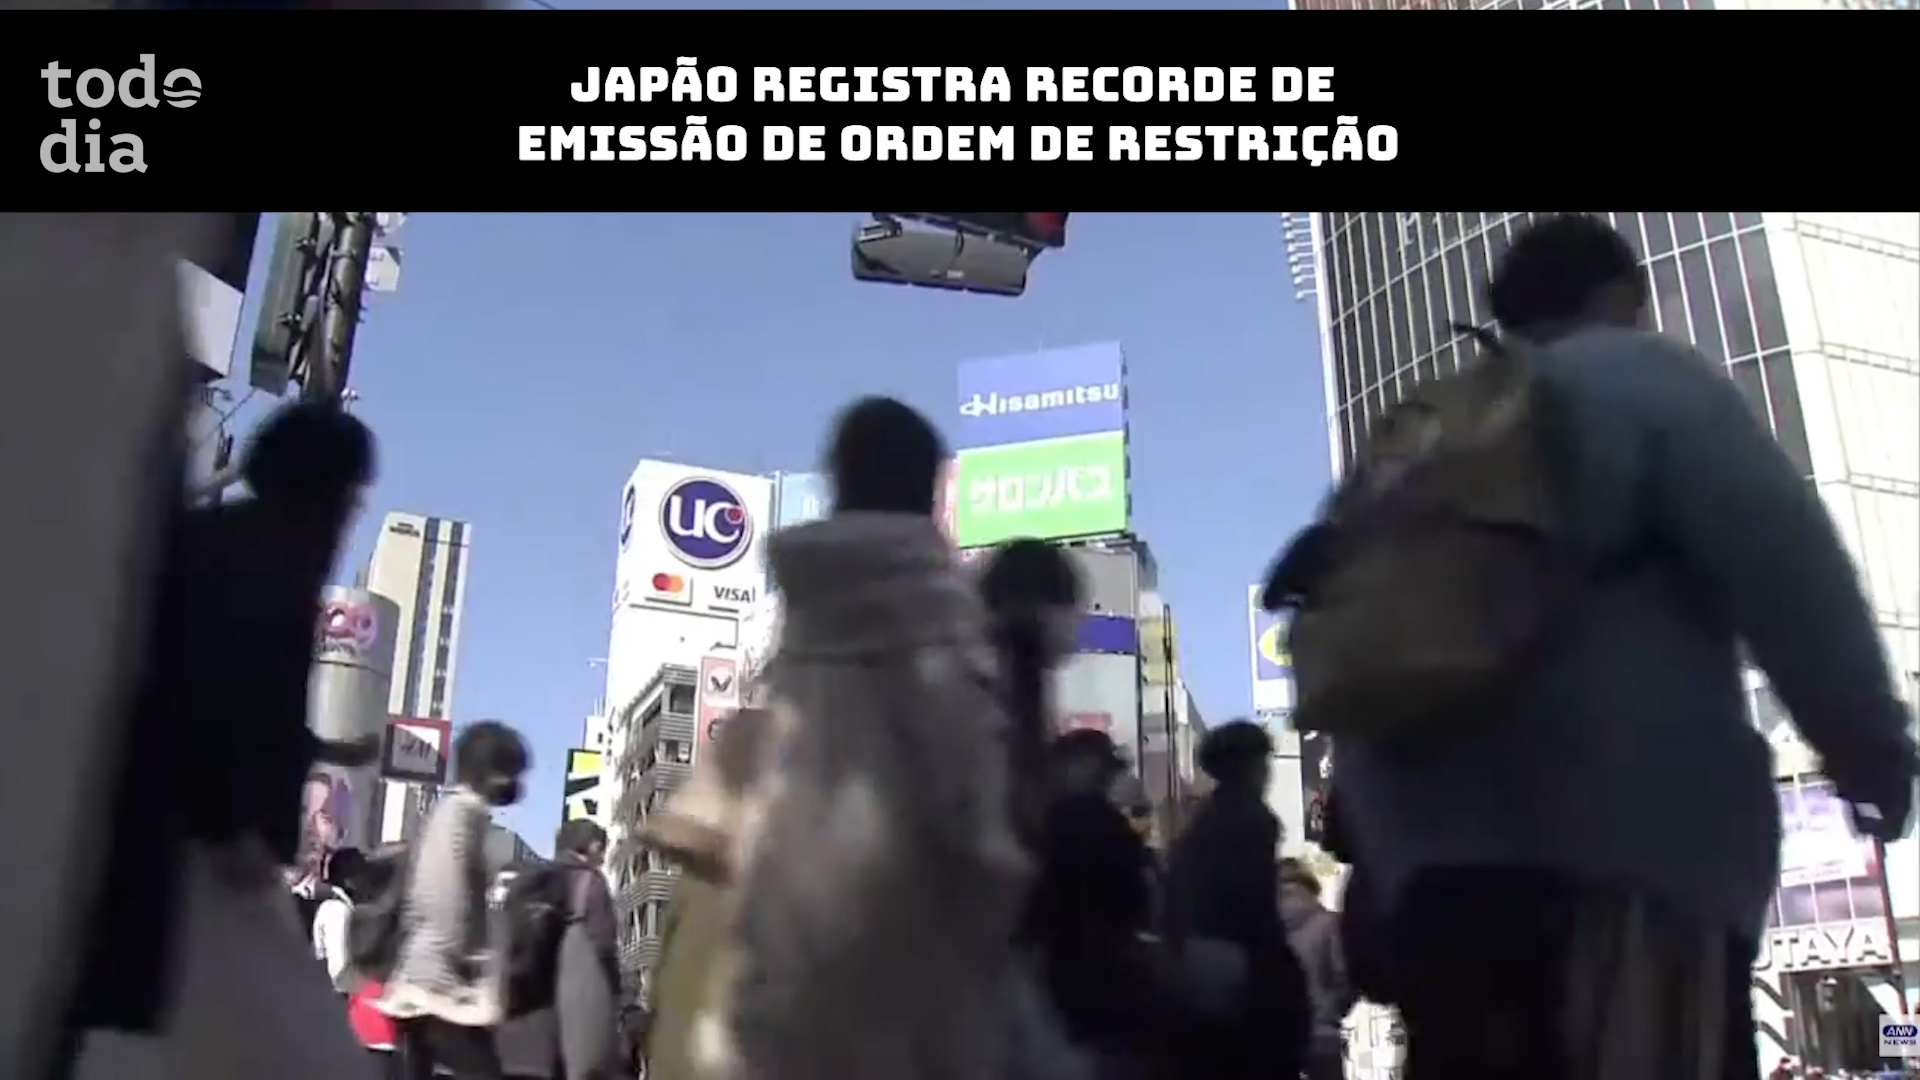 Japão registra recorde de emissão de ordem de restrição